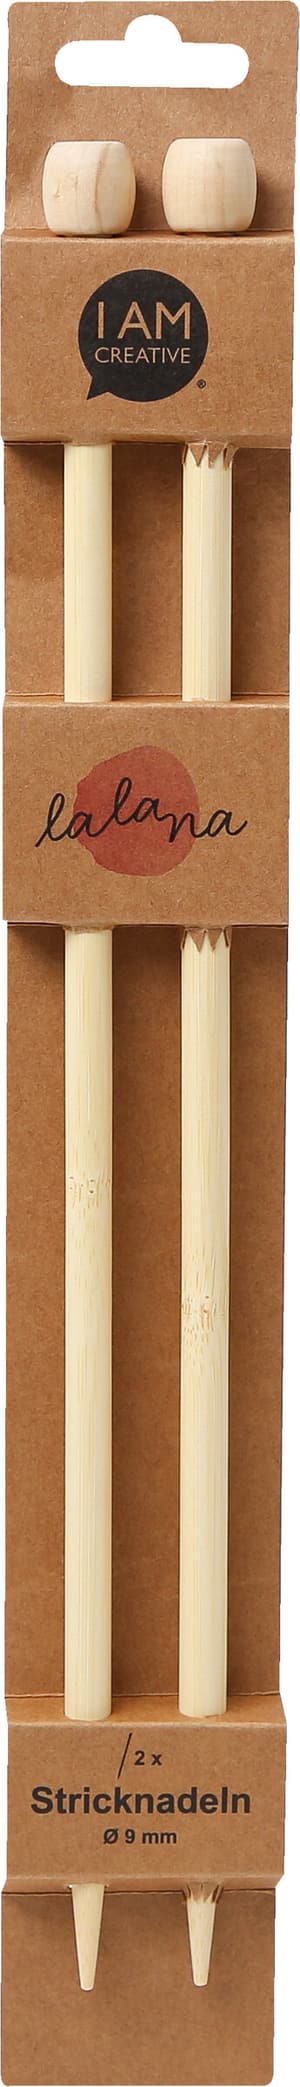 Stricknadeln, Bambus-Stricknadeln für Anfänger und Experten, Natur, ø 9 x 350 mm, 2 Stk.